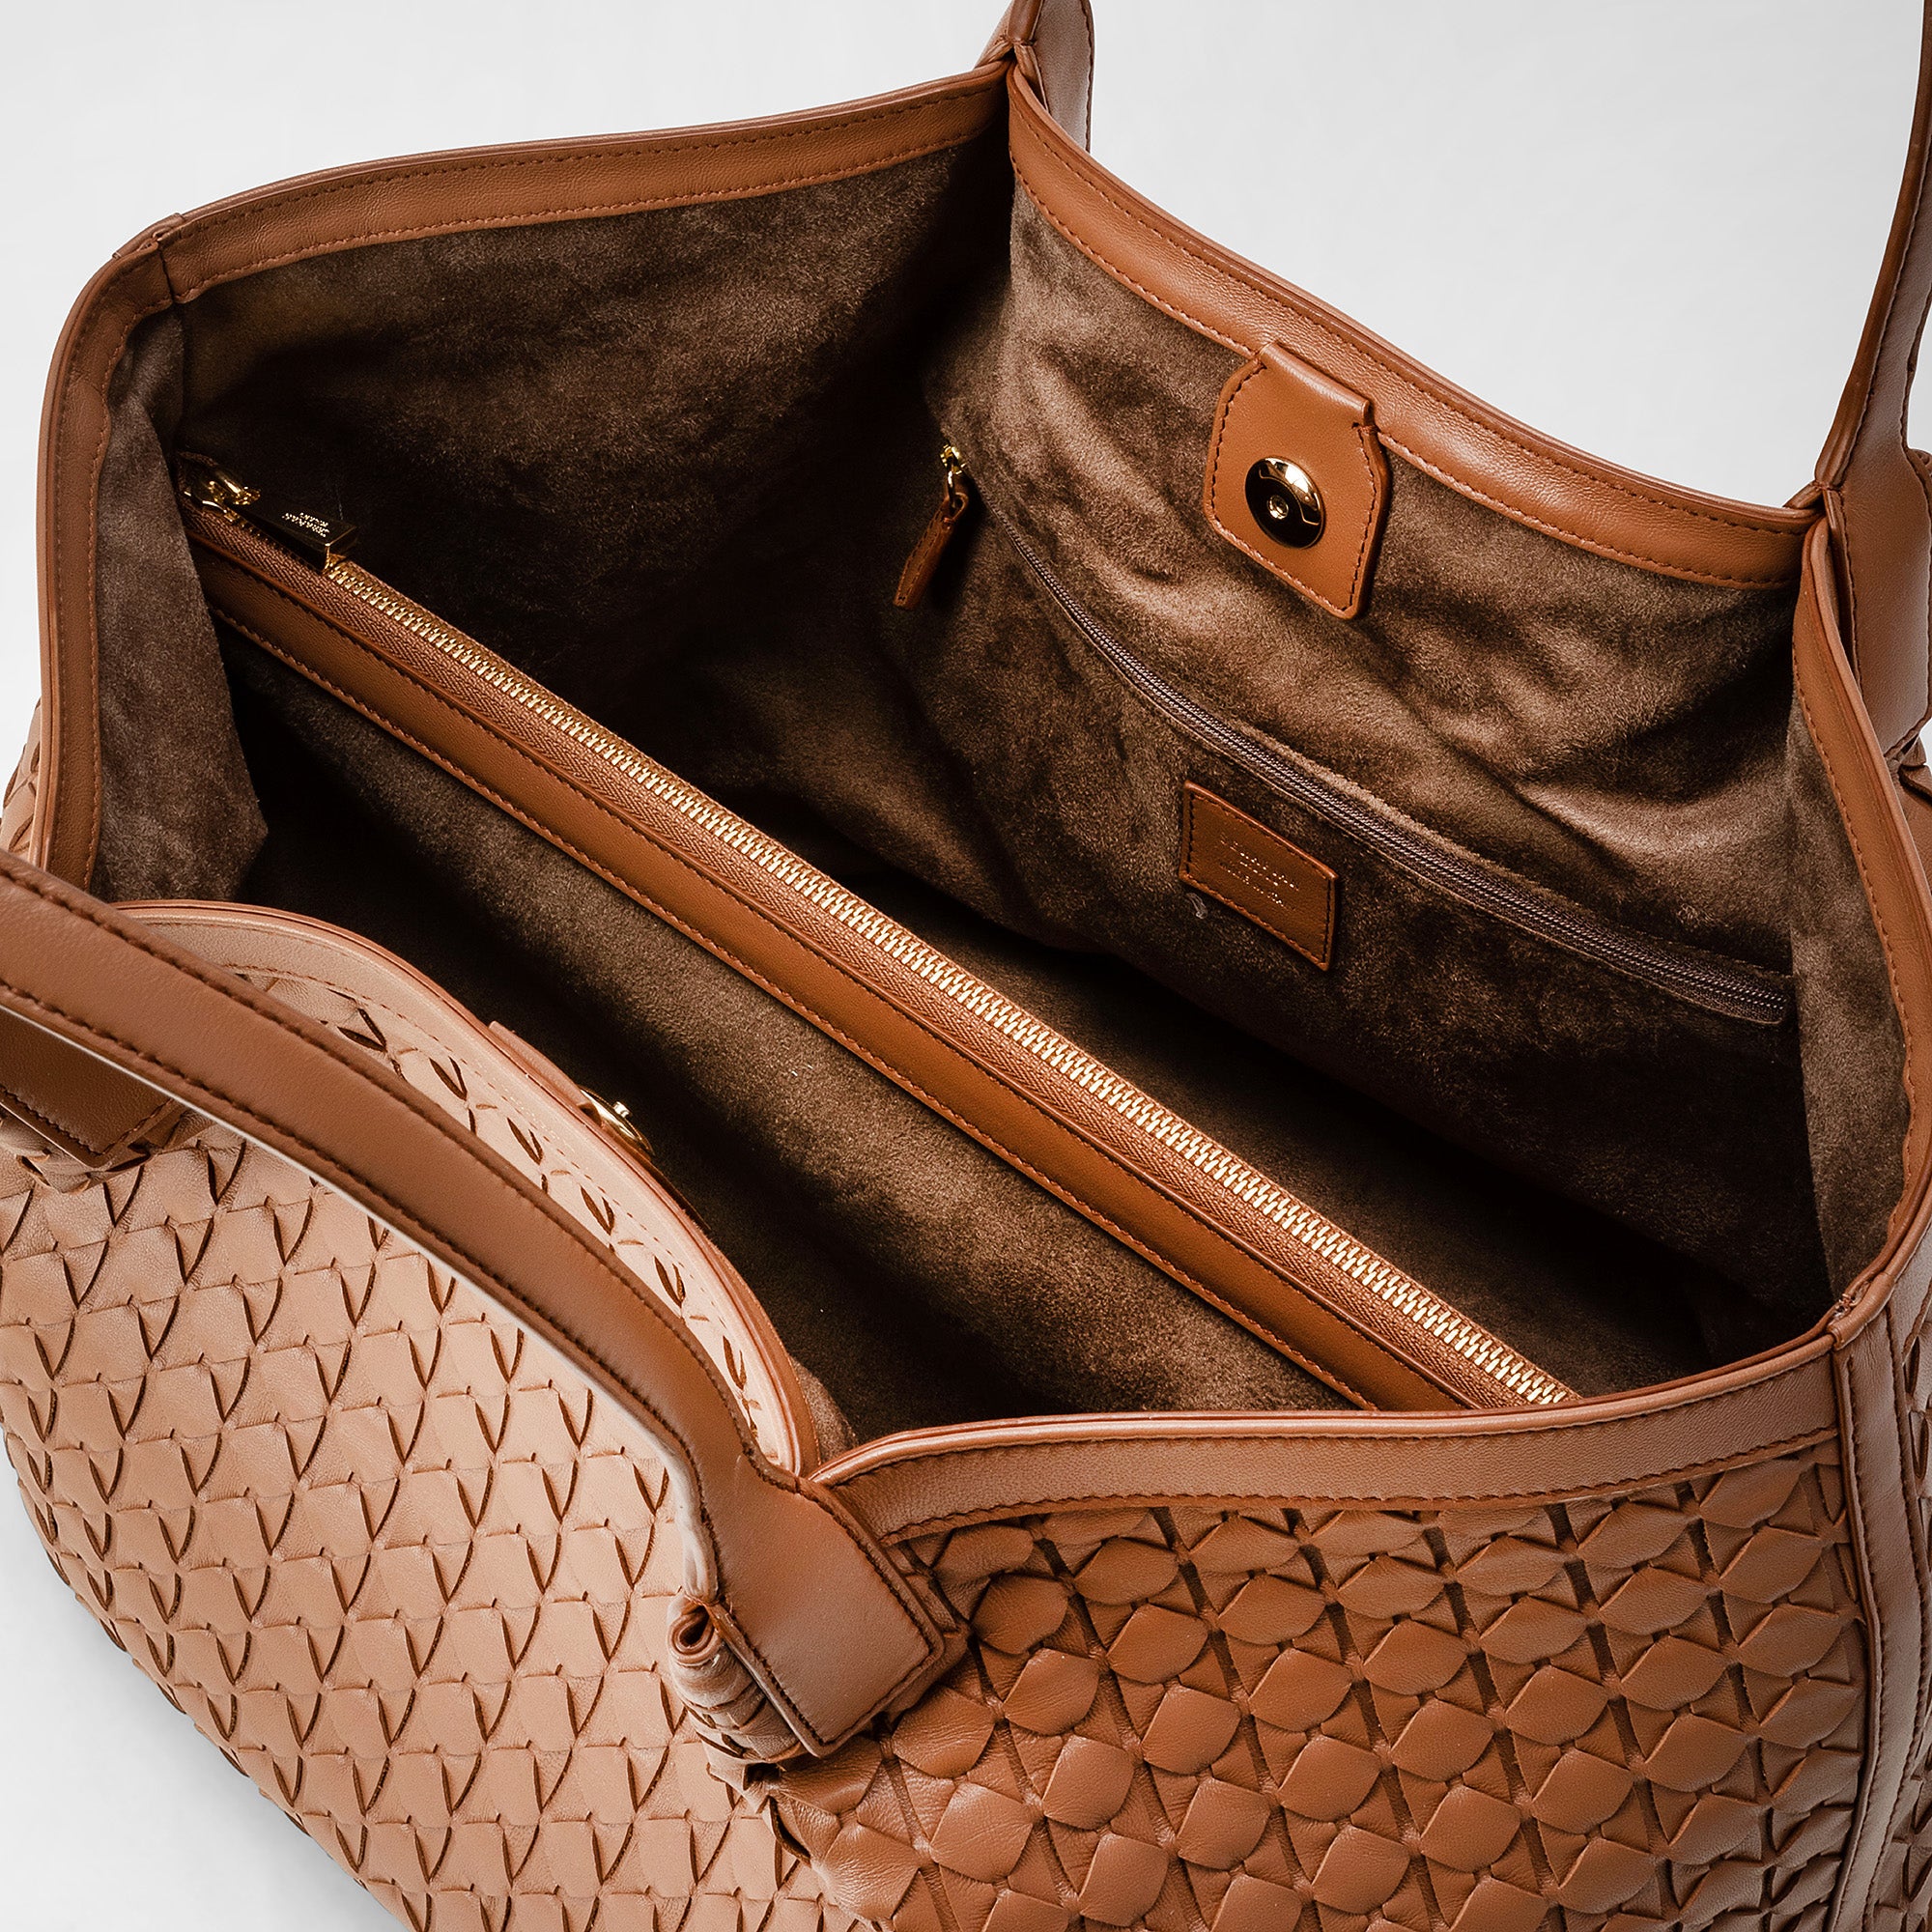 Bottega Veneta Intrecciato Woven Nappa Leather Tote Bag